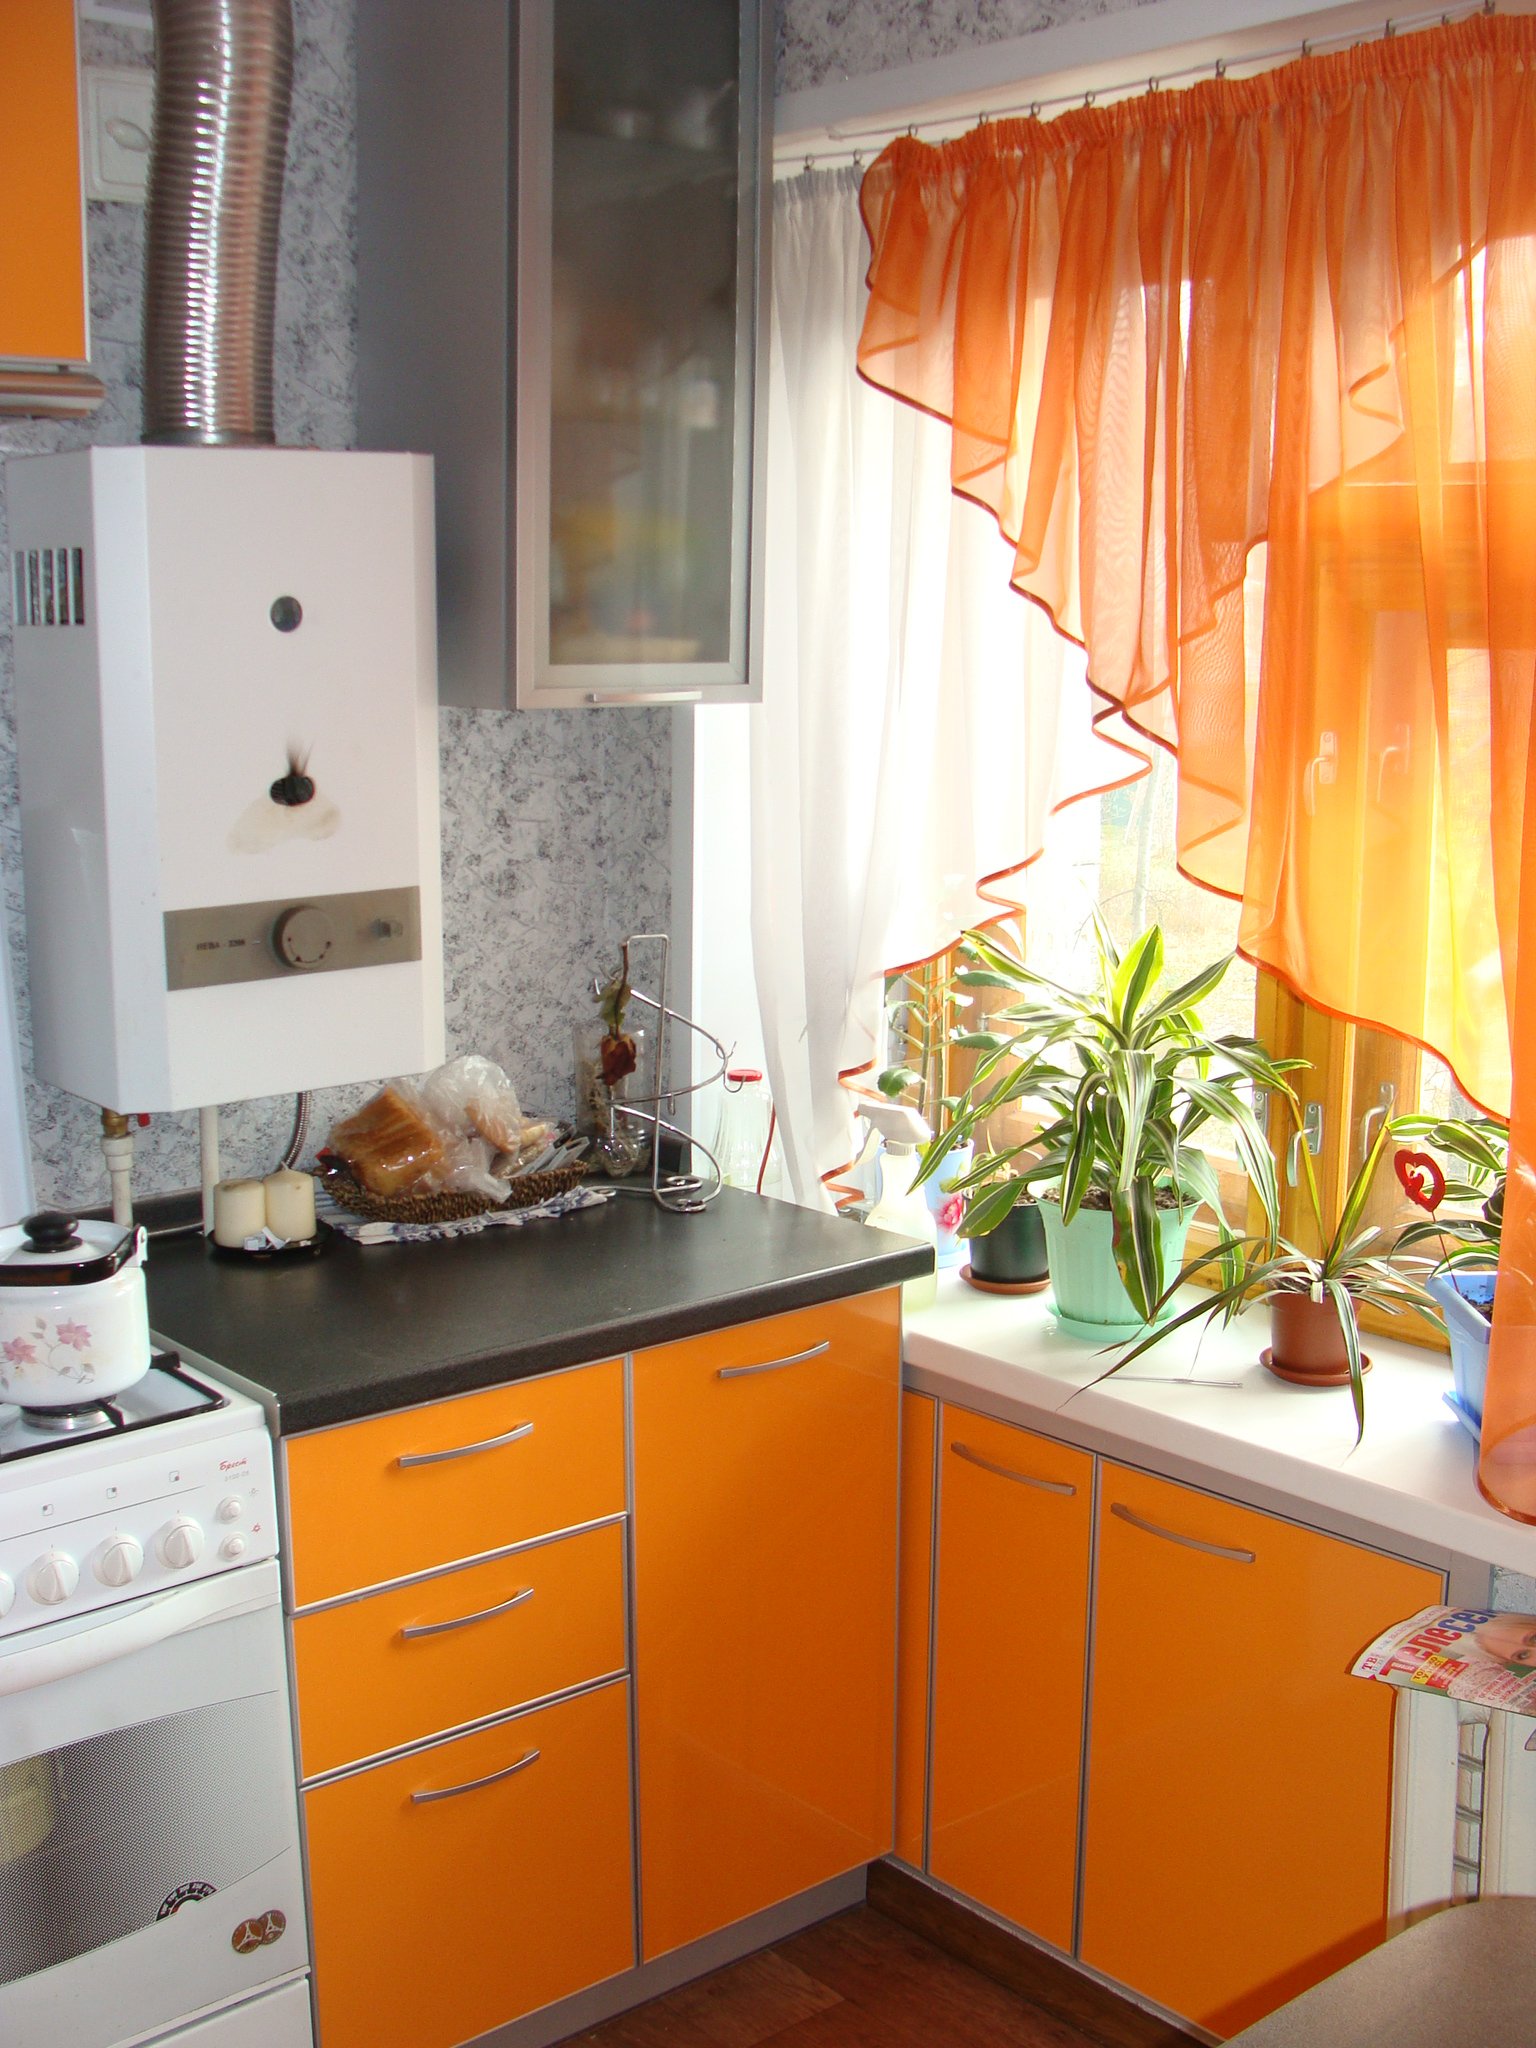 Проект современной встроенной кухни для кухни 9 кв.м (в панельном доме)